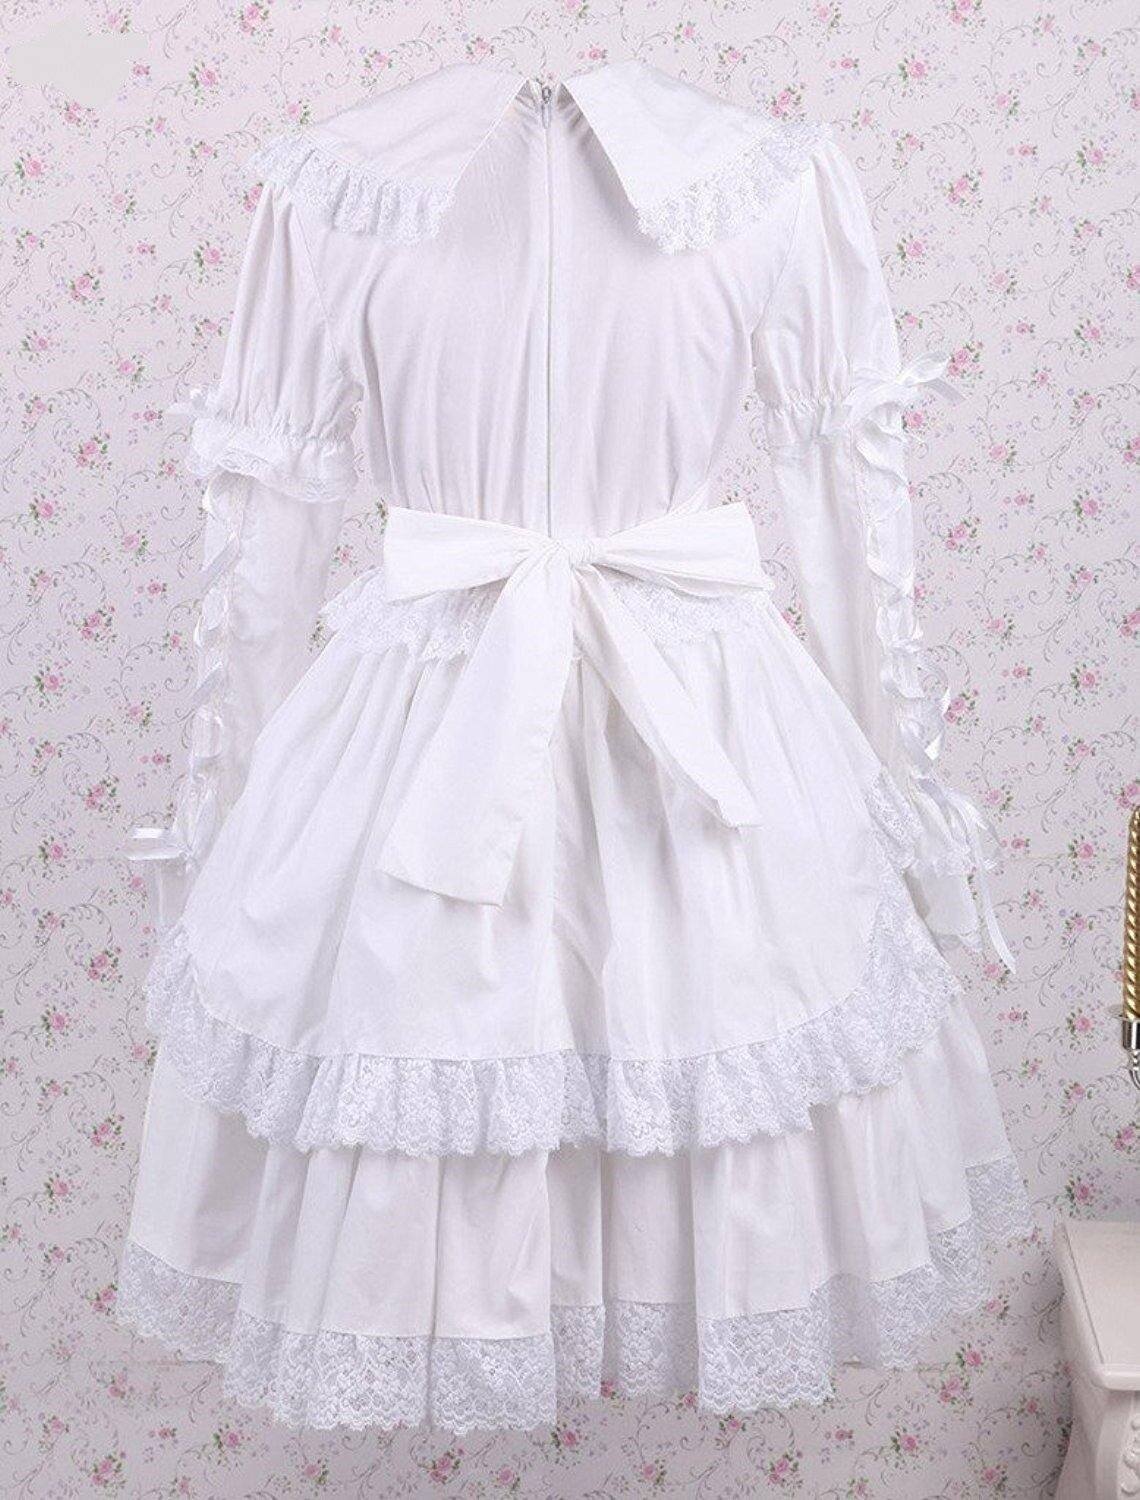 White Cotton Lace & Bow Lolita Dress - Sissy Panty Shop